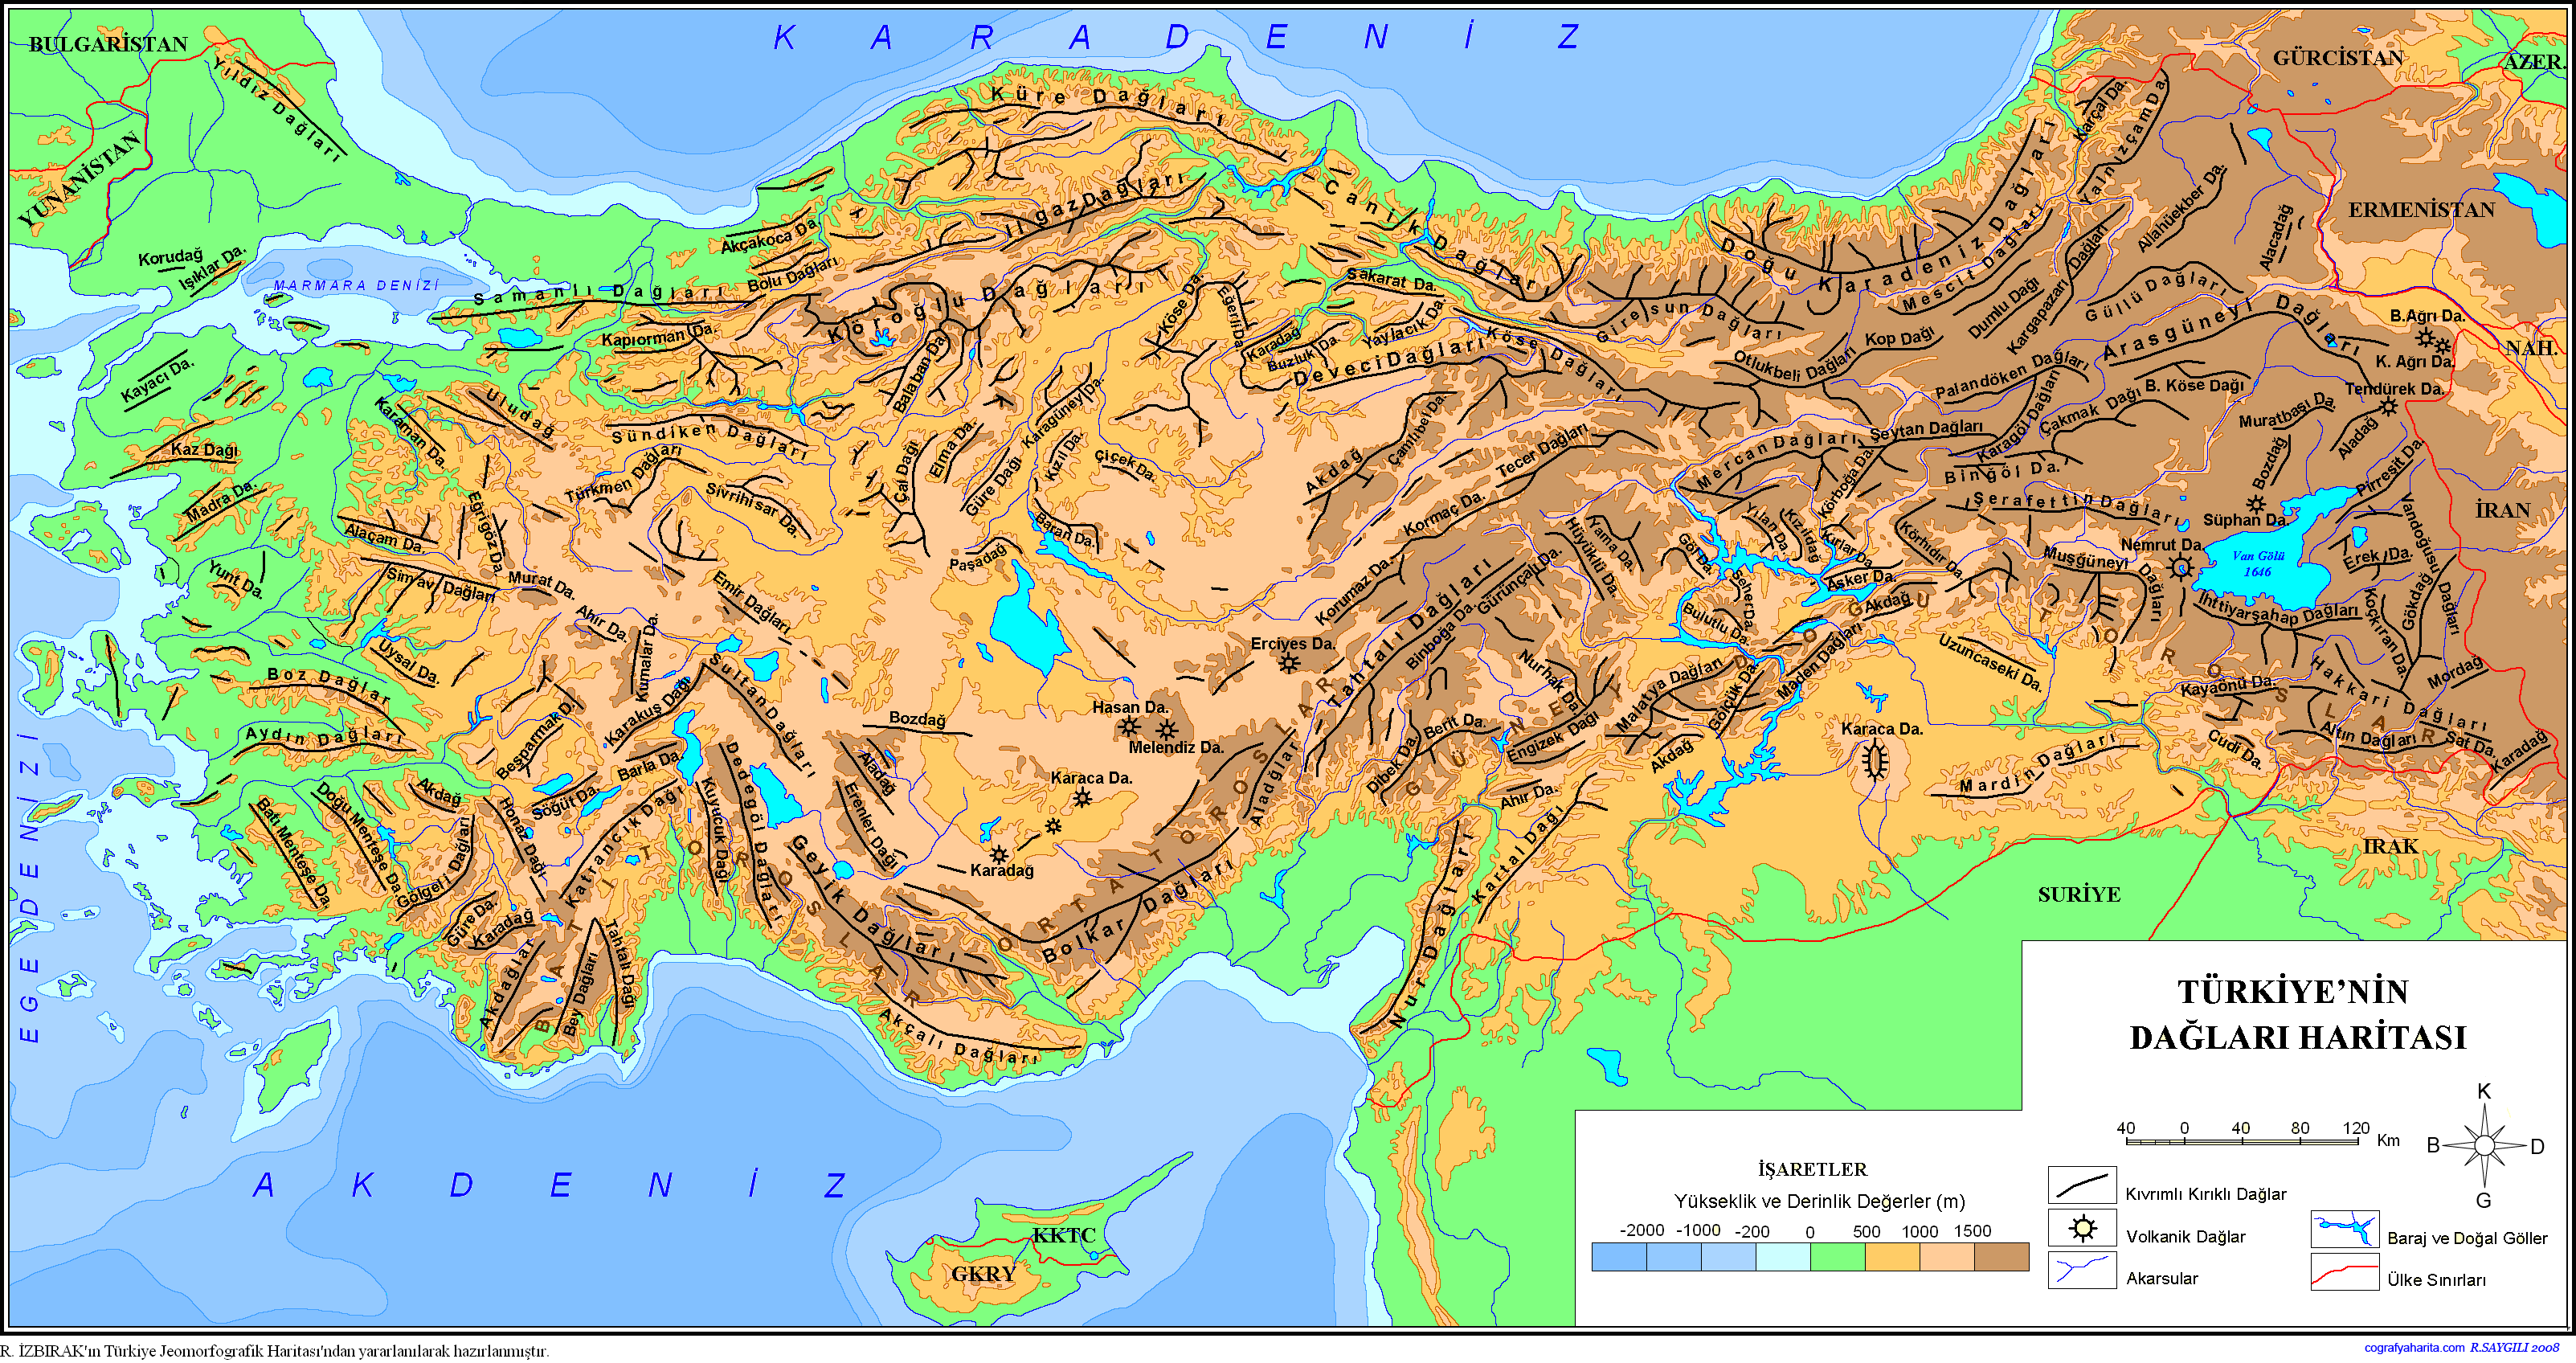 https://www.yolaski.net/images/sampledata/harita/turkiyenin-daglari-haritasi-2.png